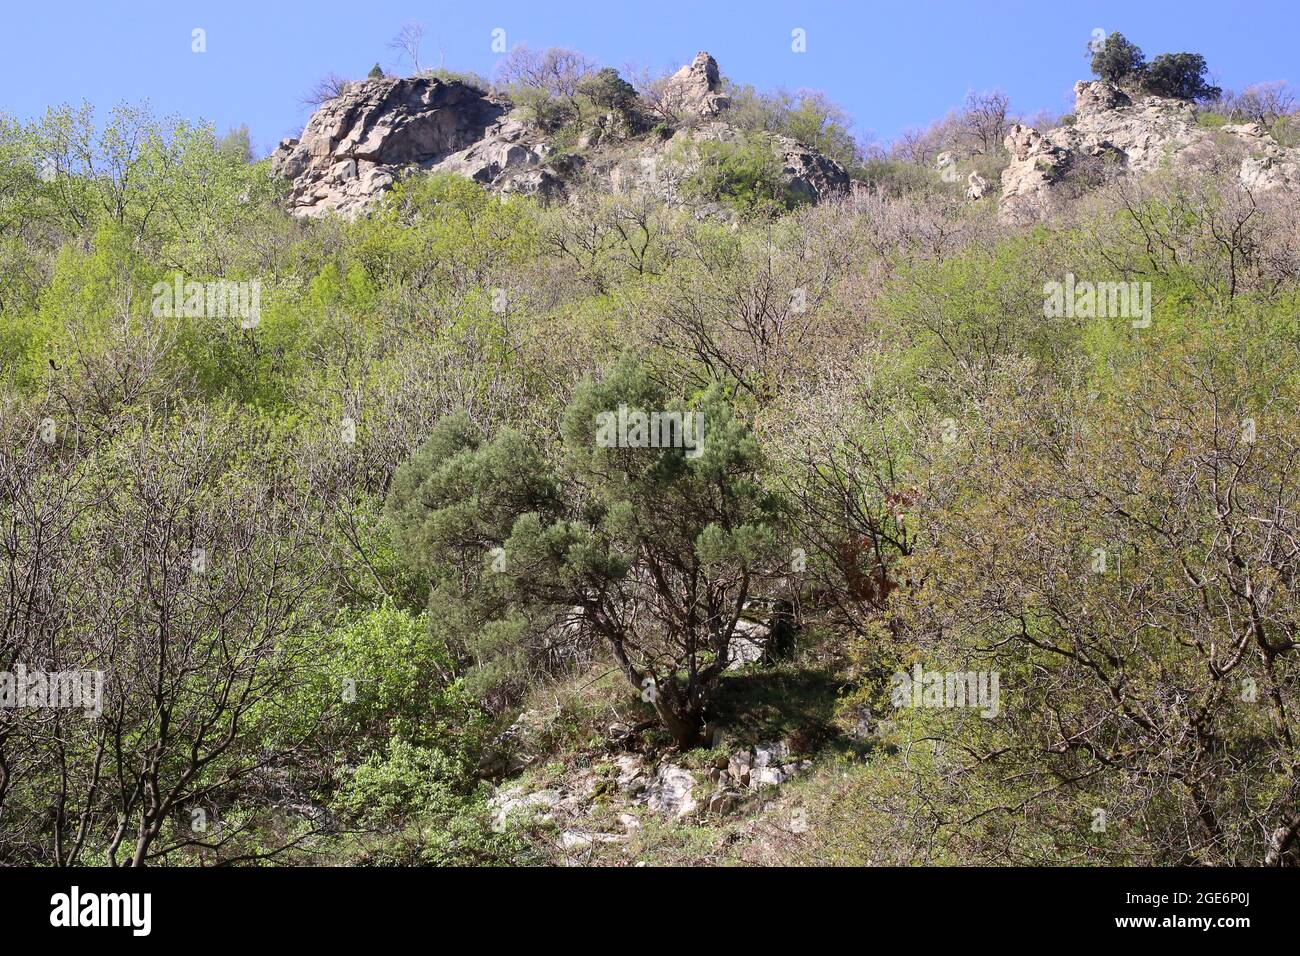 Juniperus excelsa, Cupressaceae. Wild plant shot in spring. Stock Photo